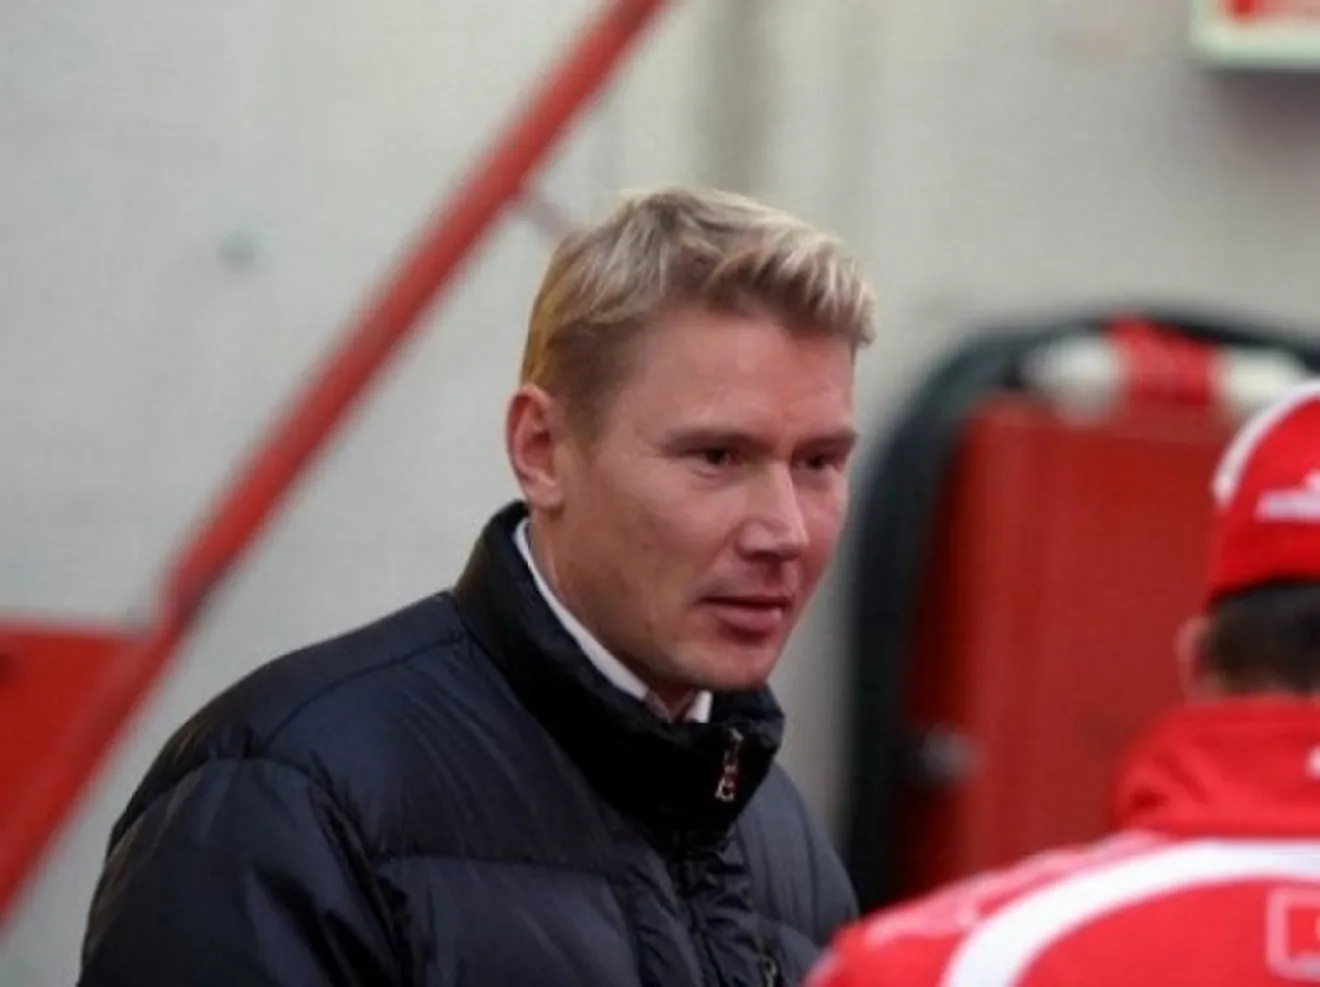 Hakkinen descarta su regreso a la Fórmula Uno